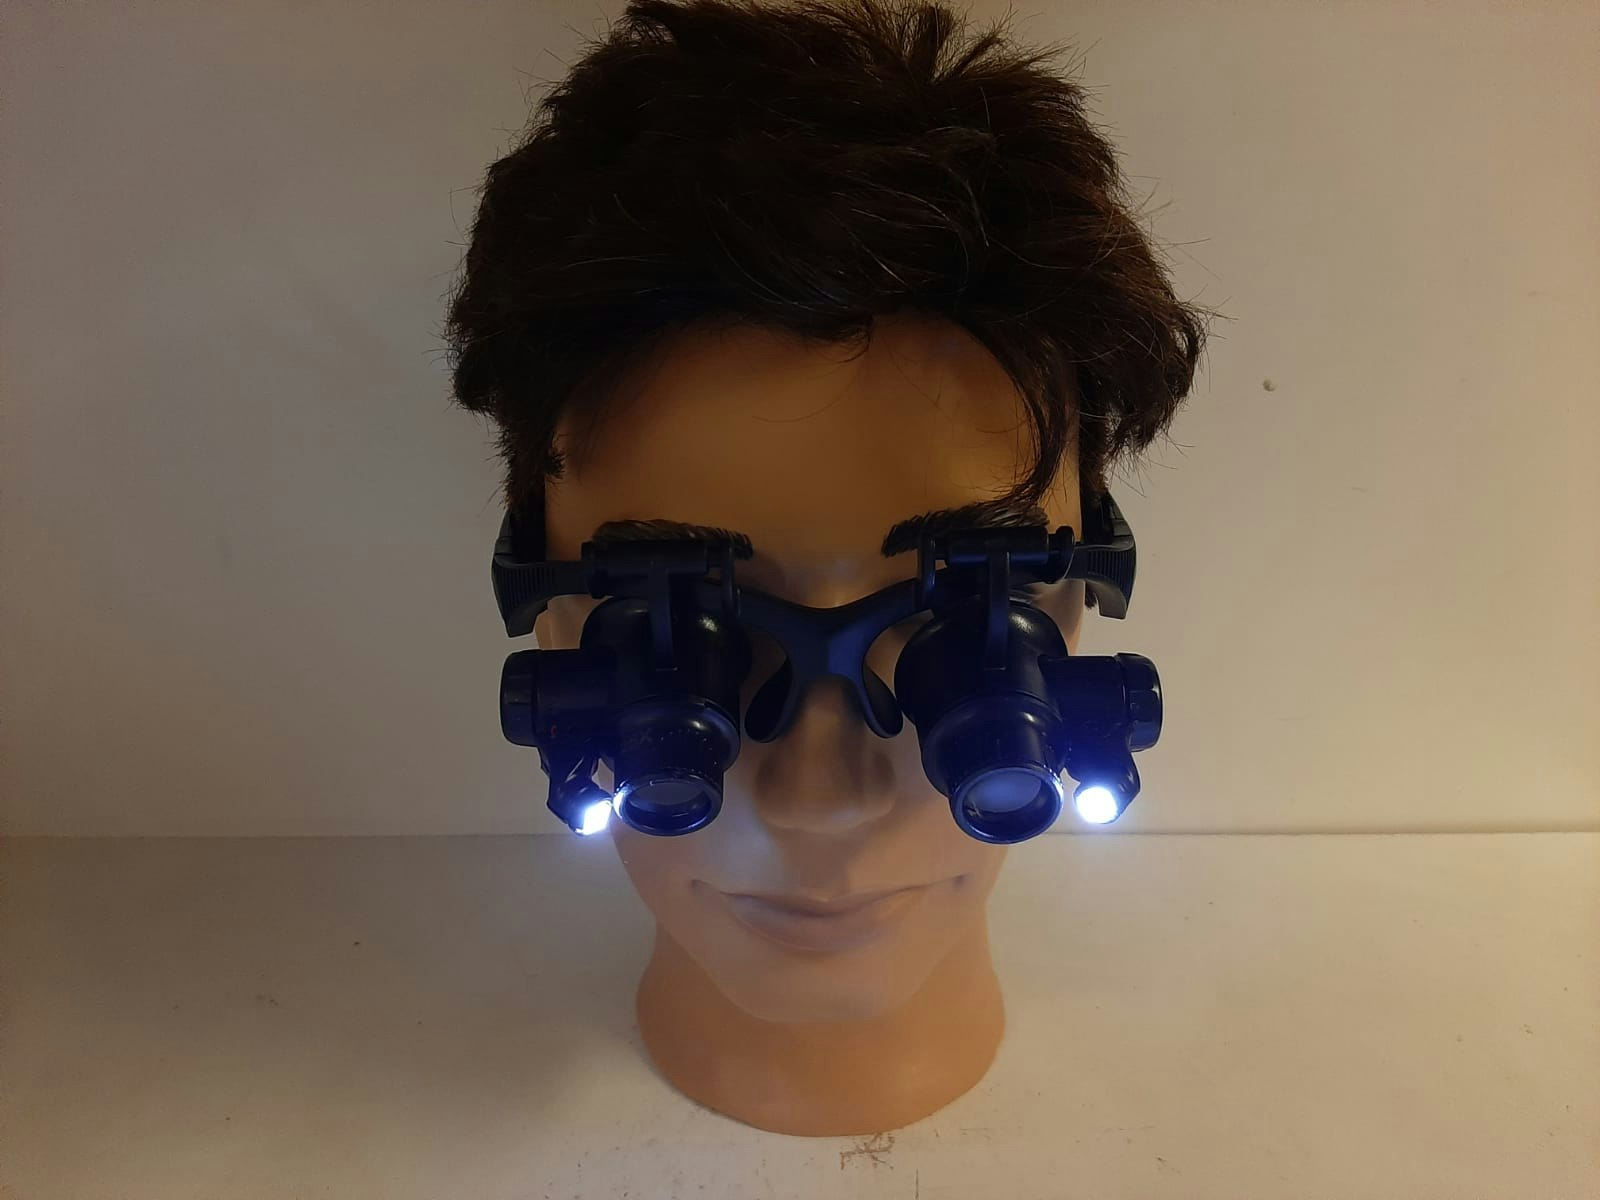 Förstoringsglasögon (10x , 15x , 20x , 25x) med LED